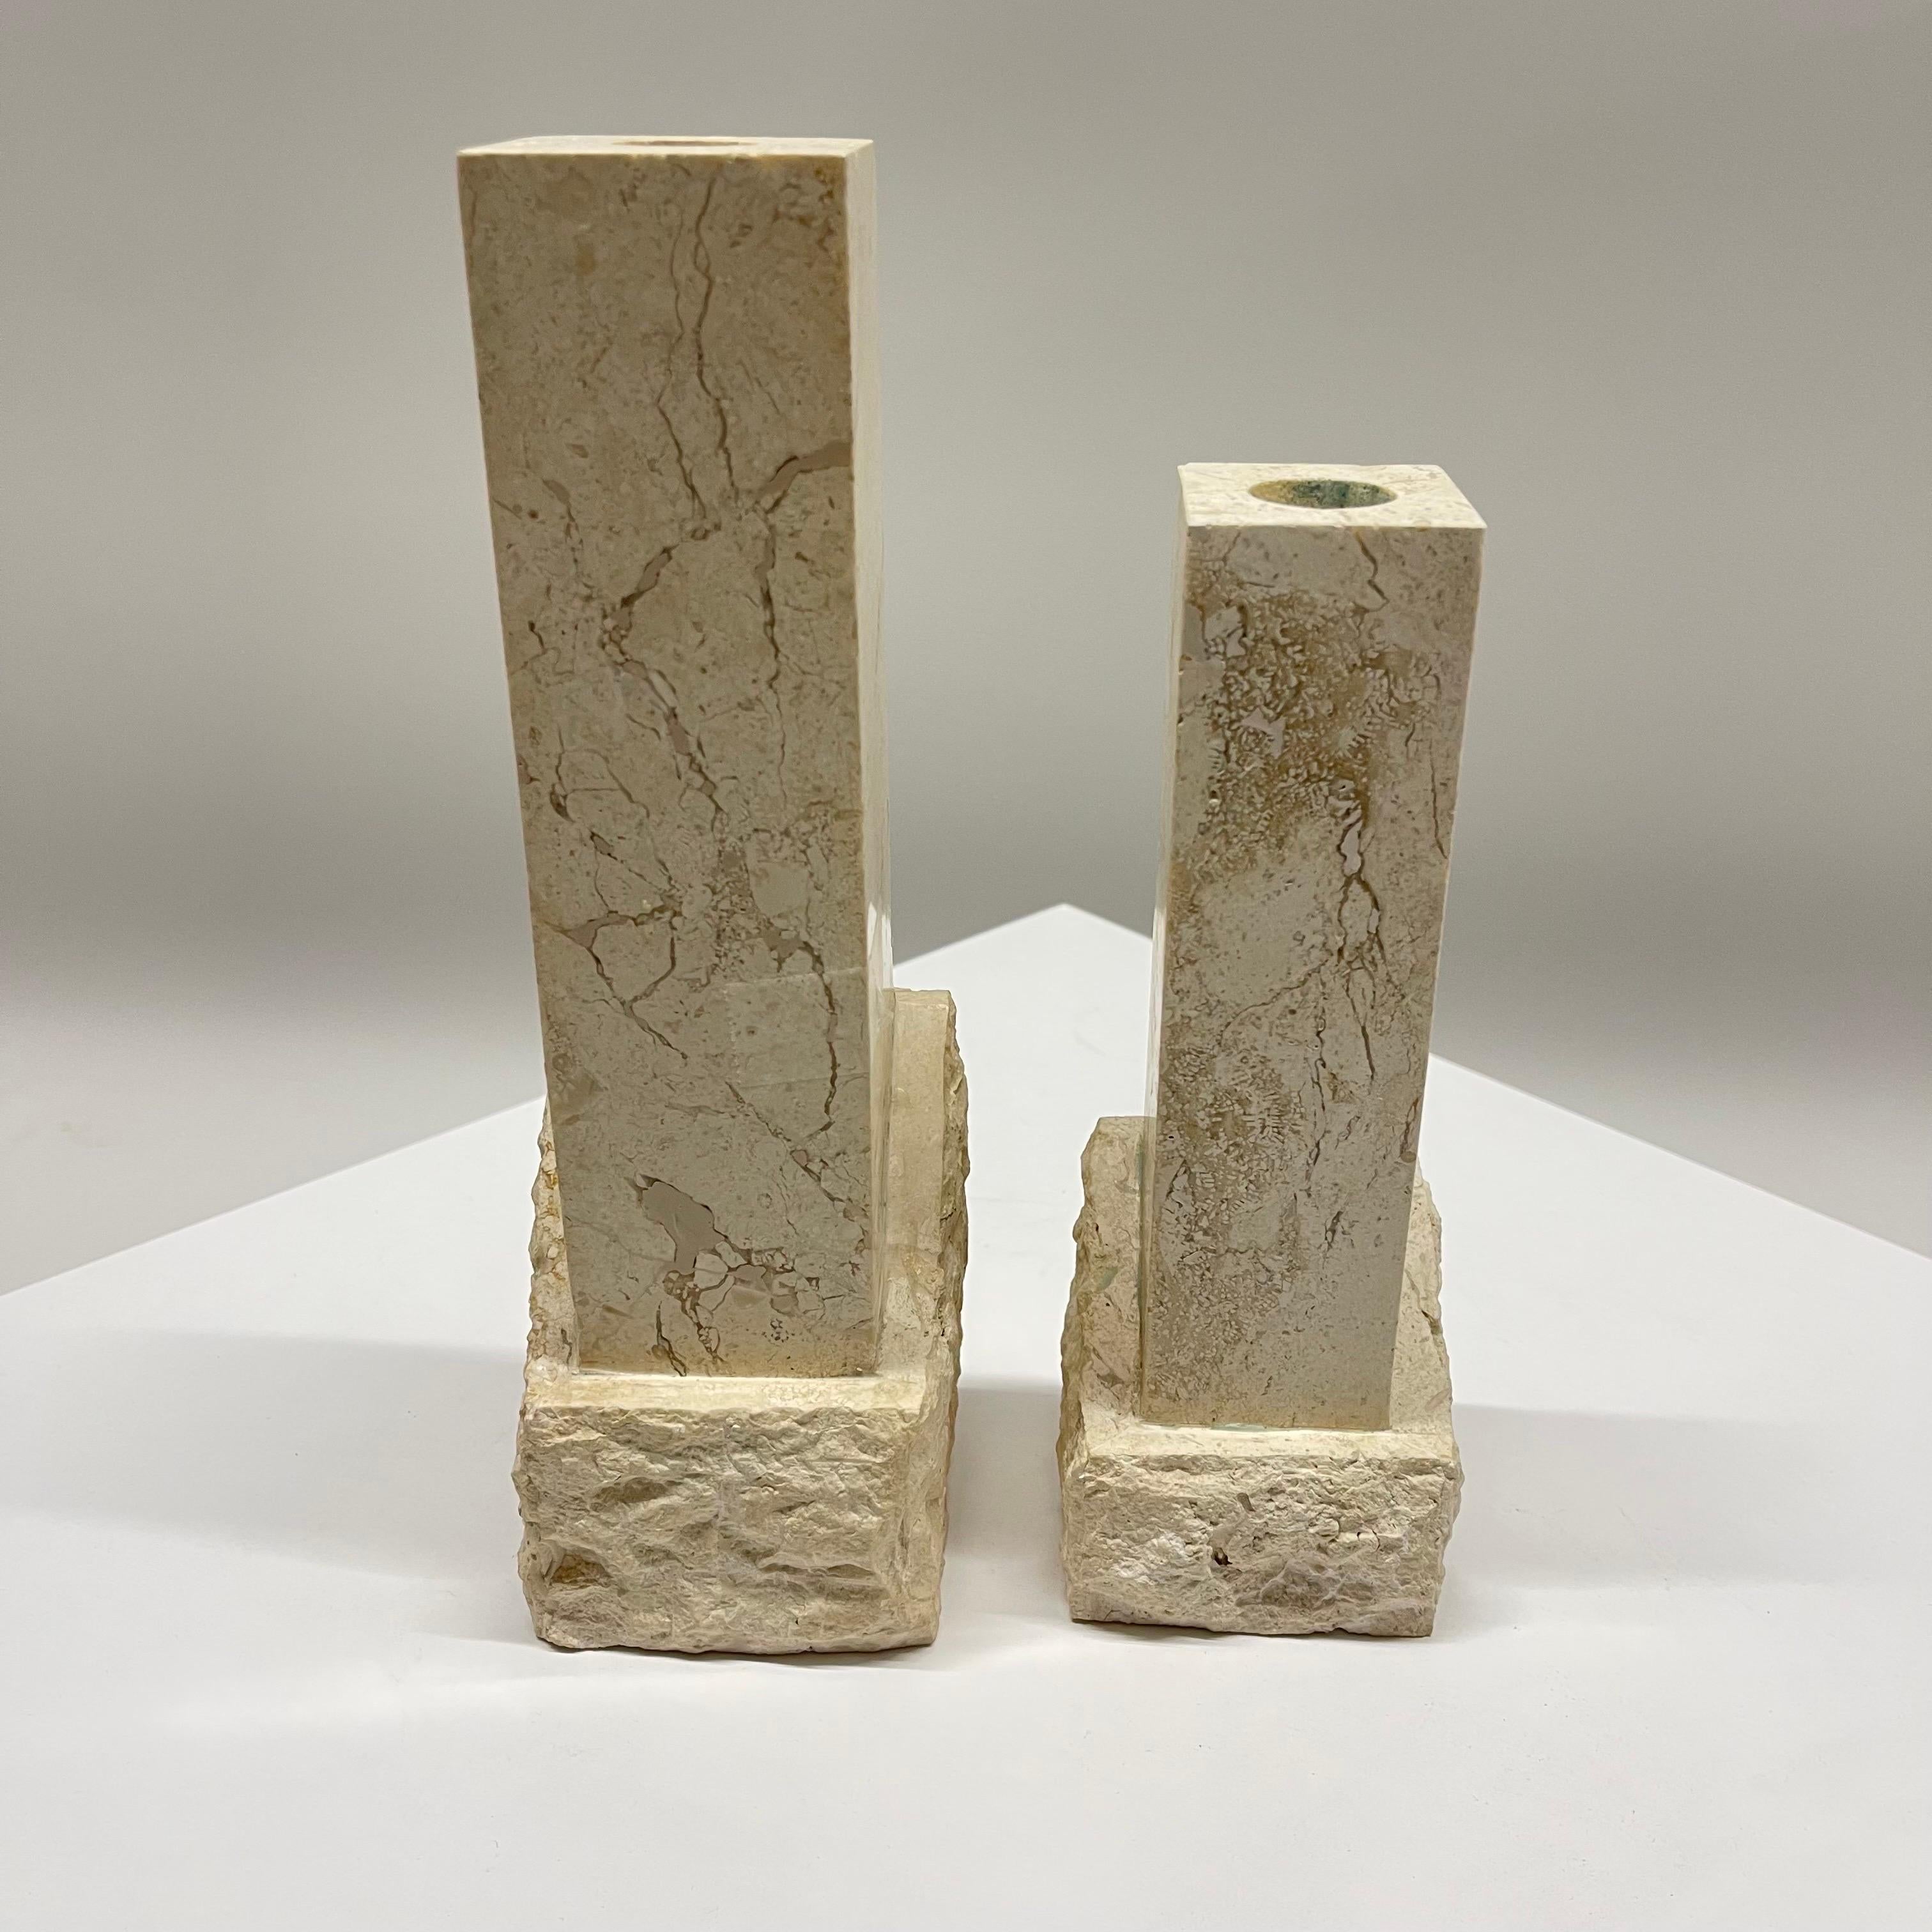 Außergewöhnliches asymmetrisches Paar postmoderner Kerzenständer oder Kerzenhalter aus zwei mosaikartig strukturierten Travertinplatten, die sowohl glatt poliert als auch grob gemeißelt sind.  Entworfen in Huntington Beach, Kalifornien, und